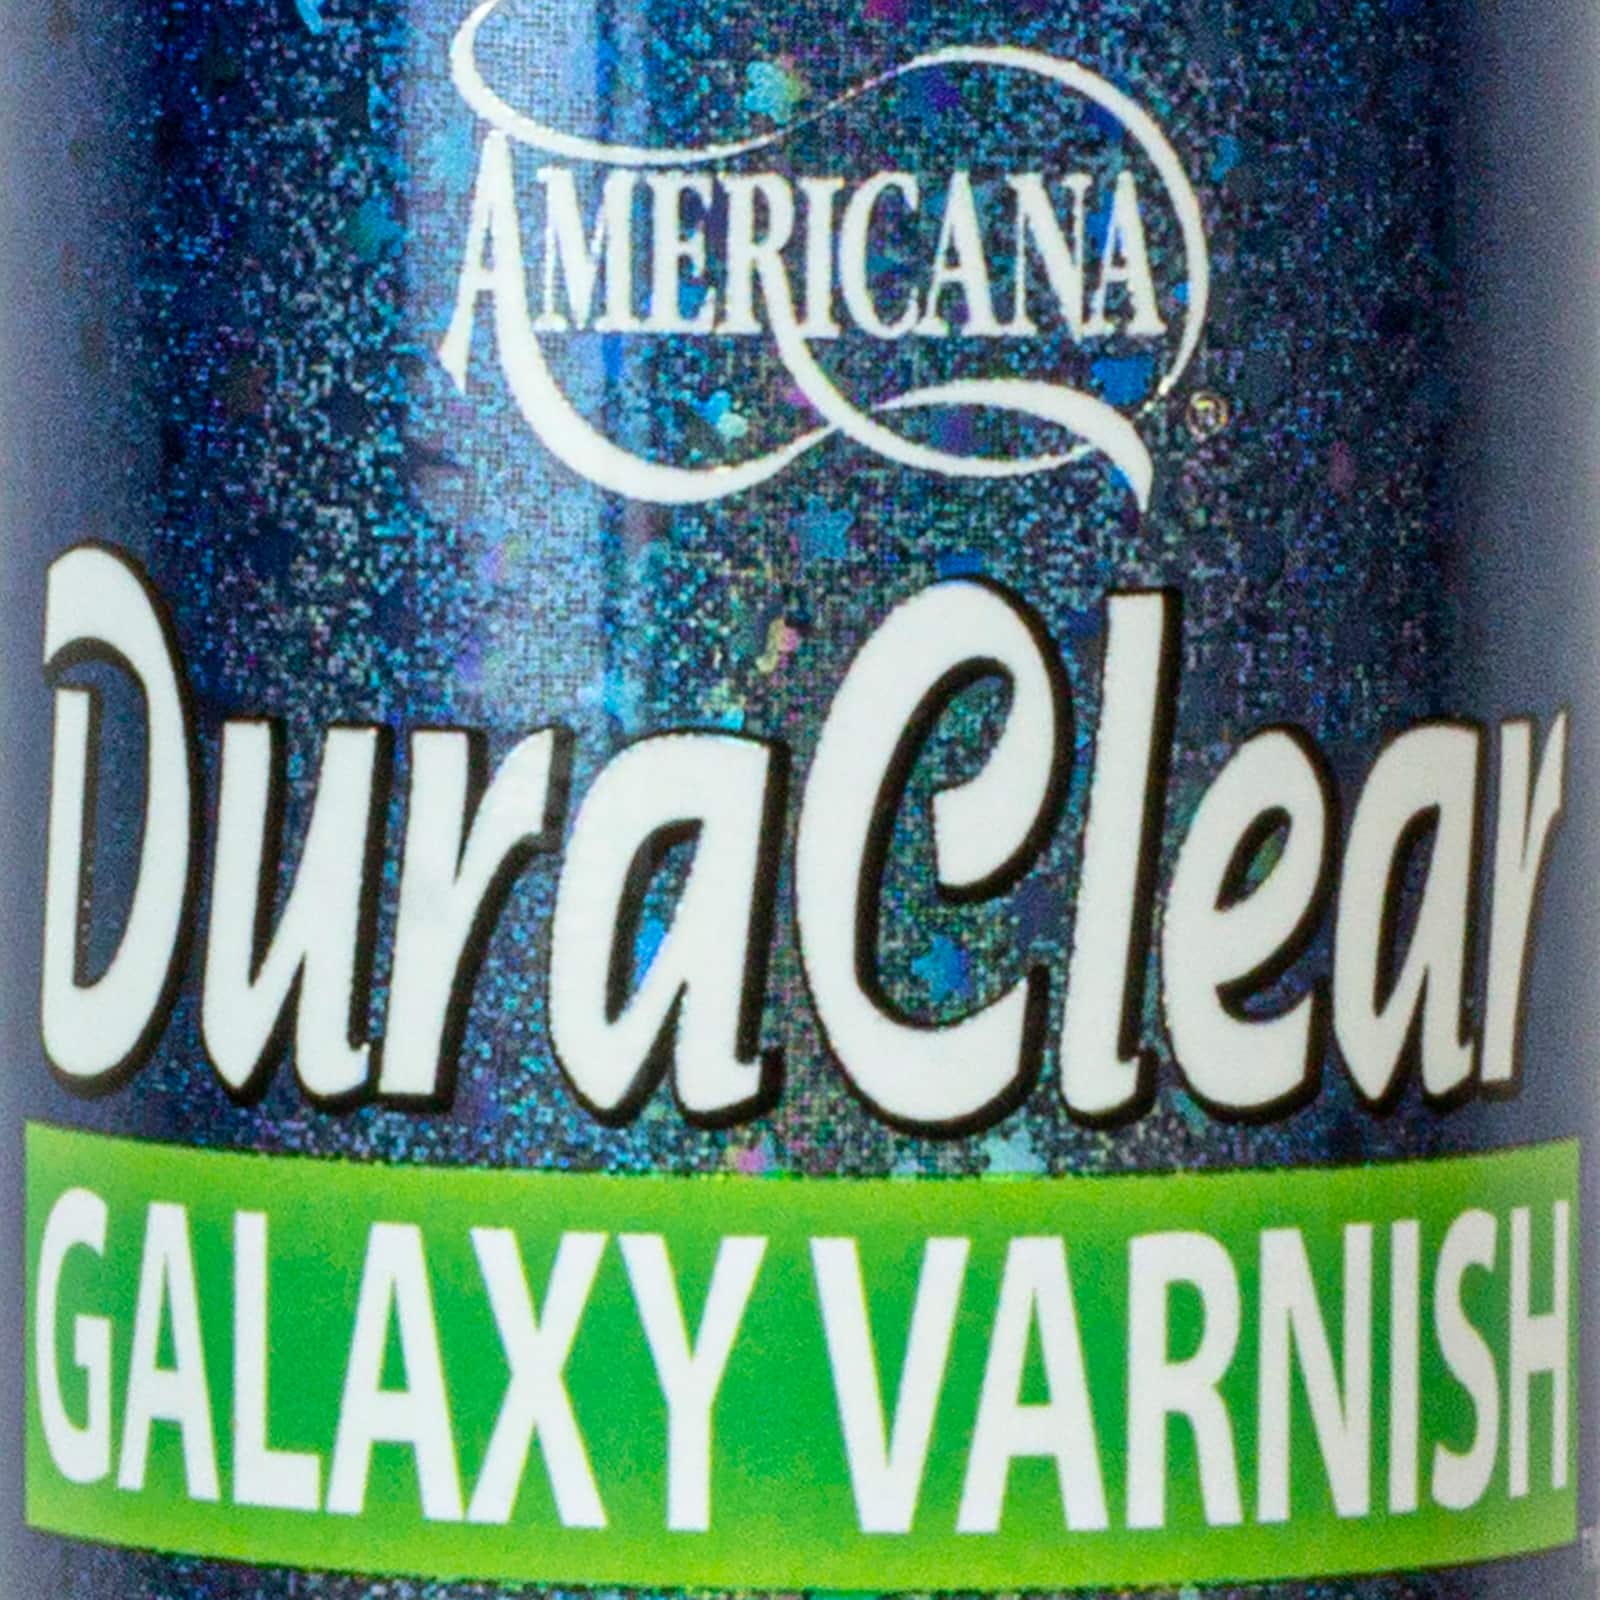 Art Product Reviews - DuraClear Galaxy Varnish 